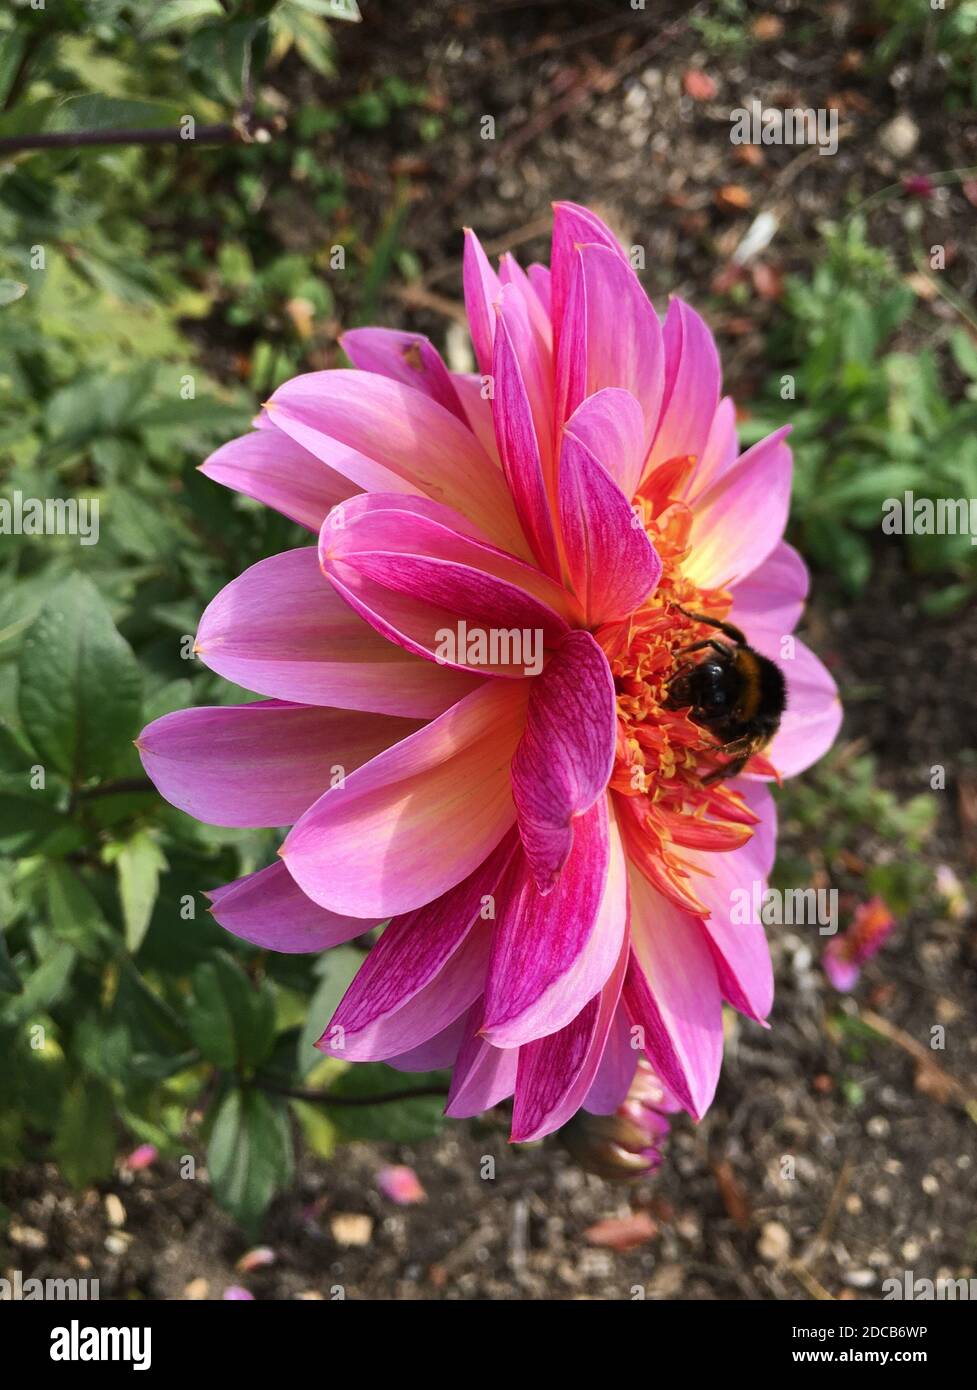 Bumble Bee collectant le pollen d'une fleur de Dahlia dont le centre est jaune, entourée de pétales aux bords rose vif. Automne 2020. Banque D'Images